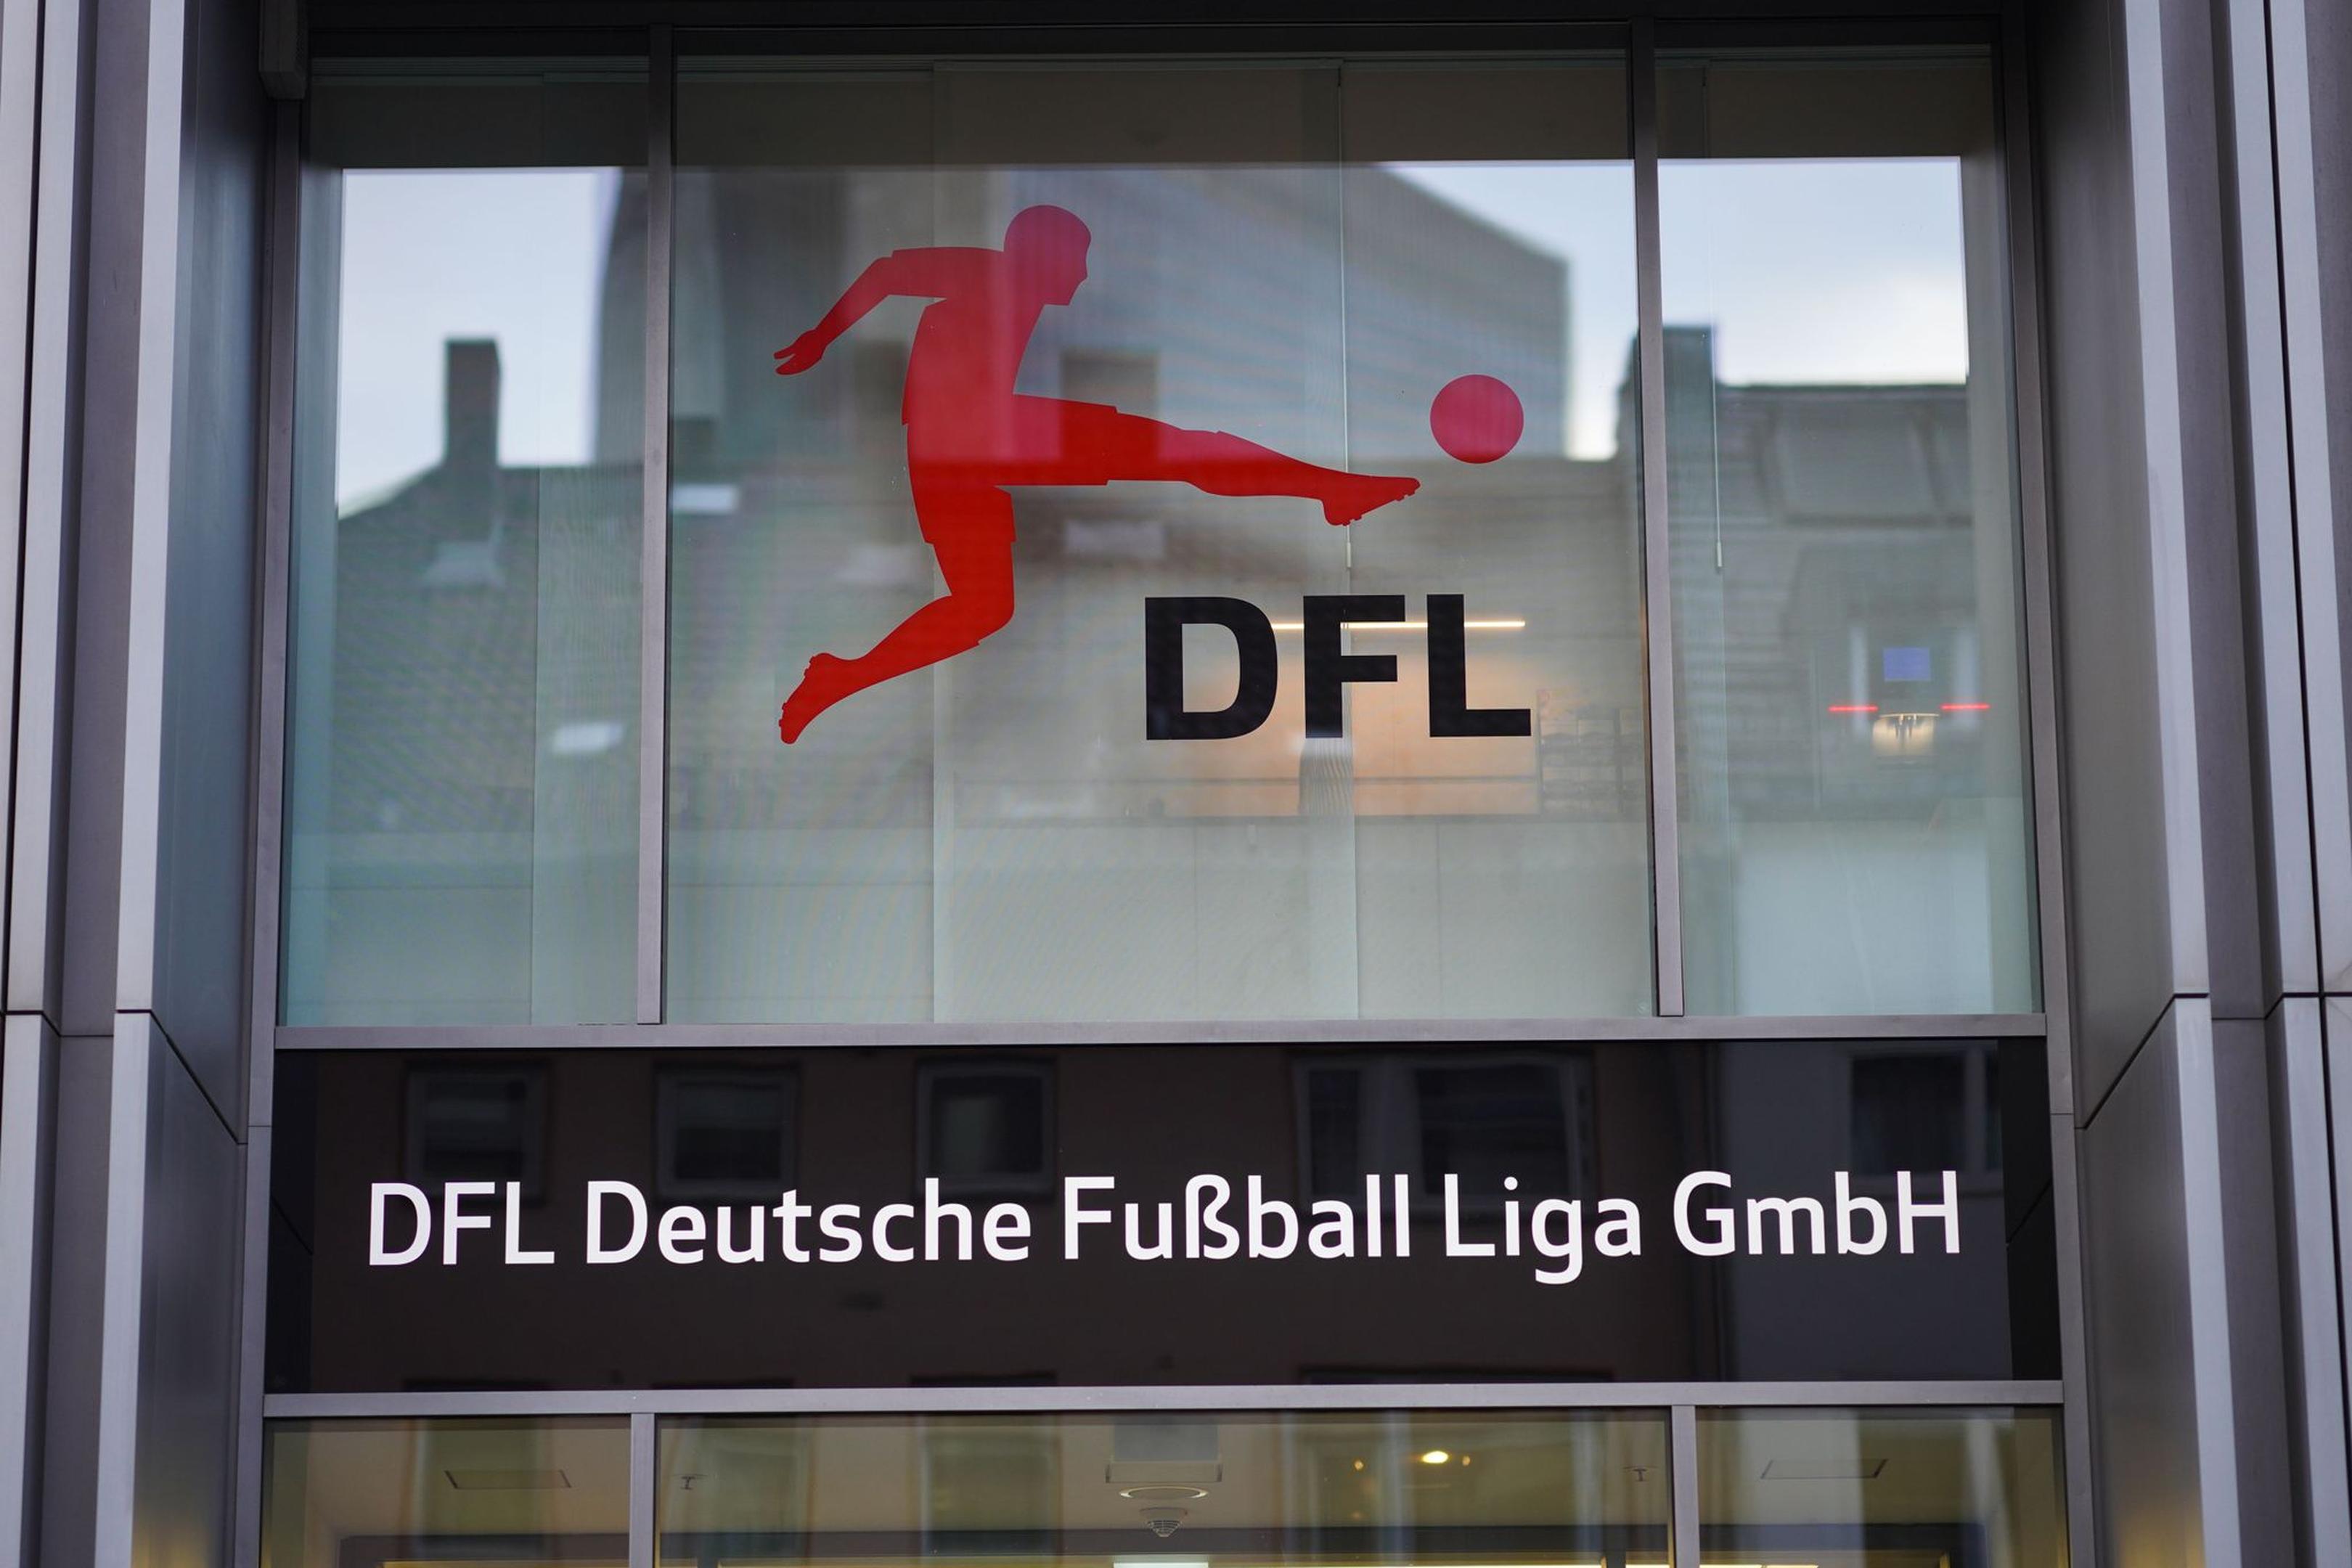 Noch müssen einige Clubs um die Lizenzierung durch die DFL zittern.